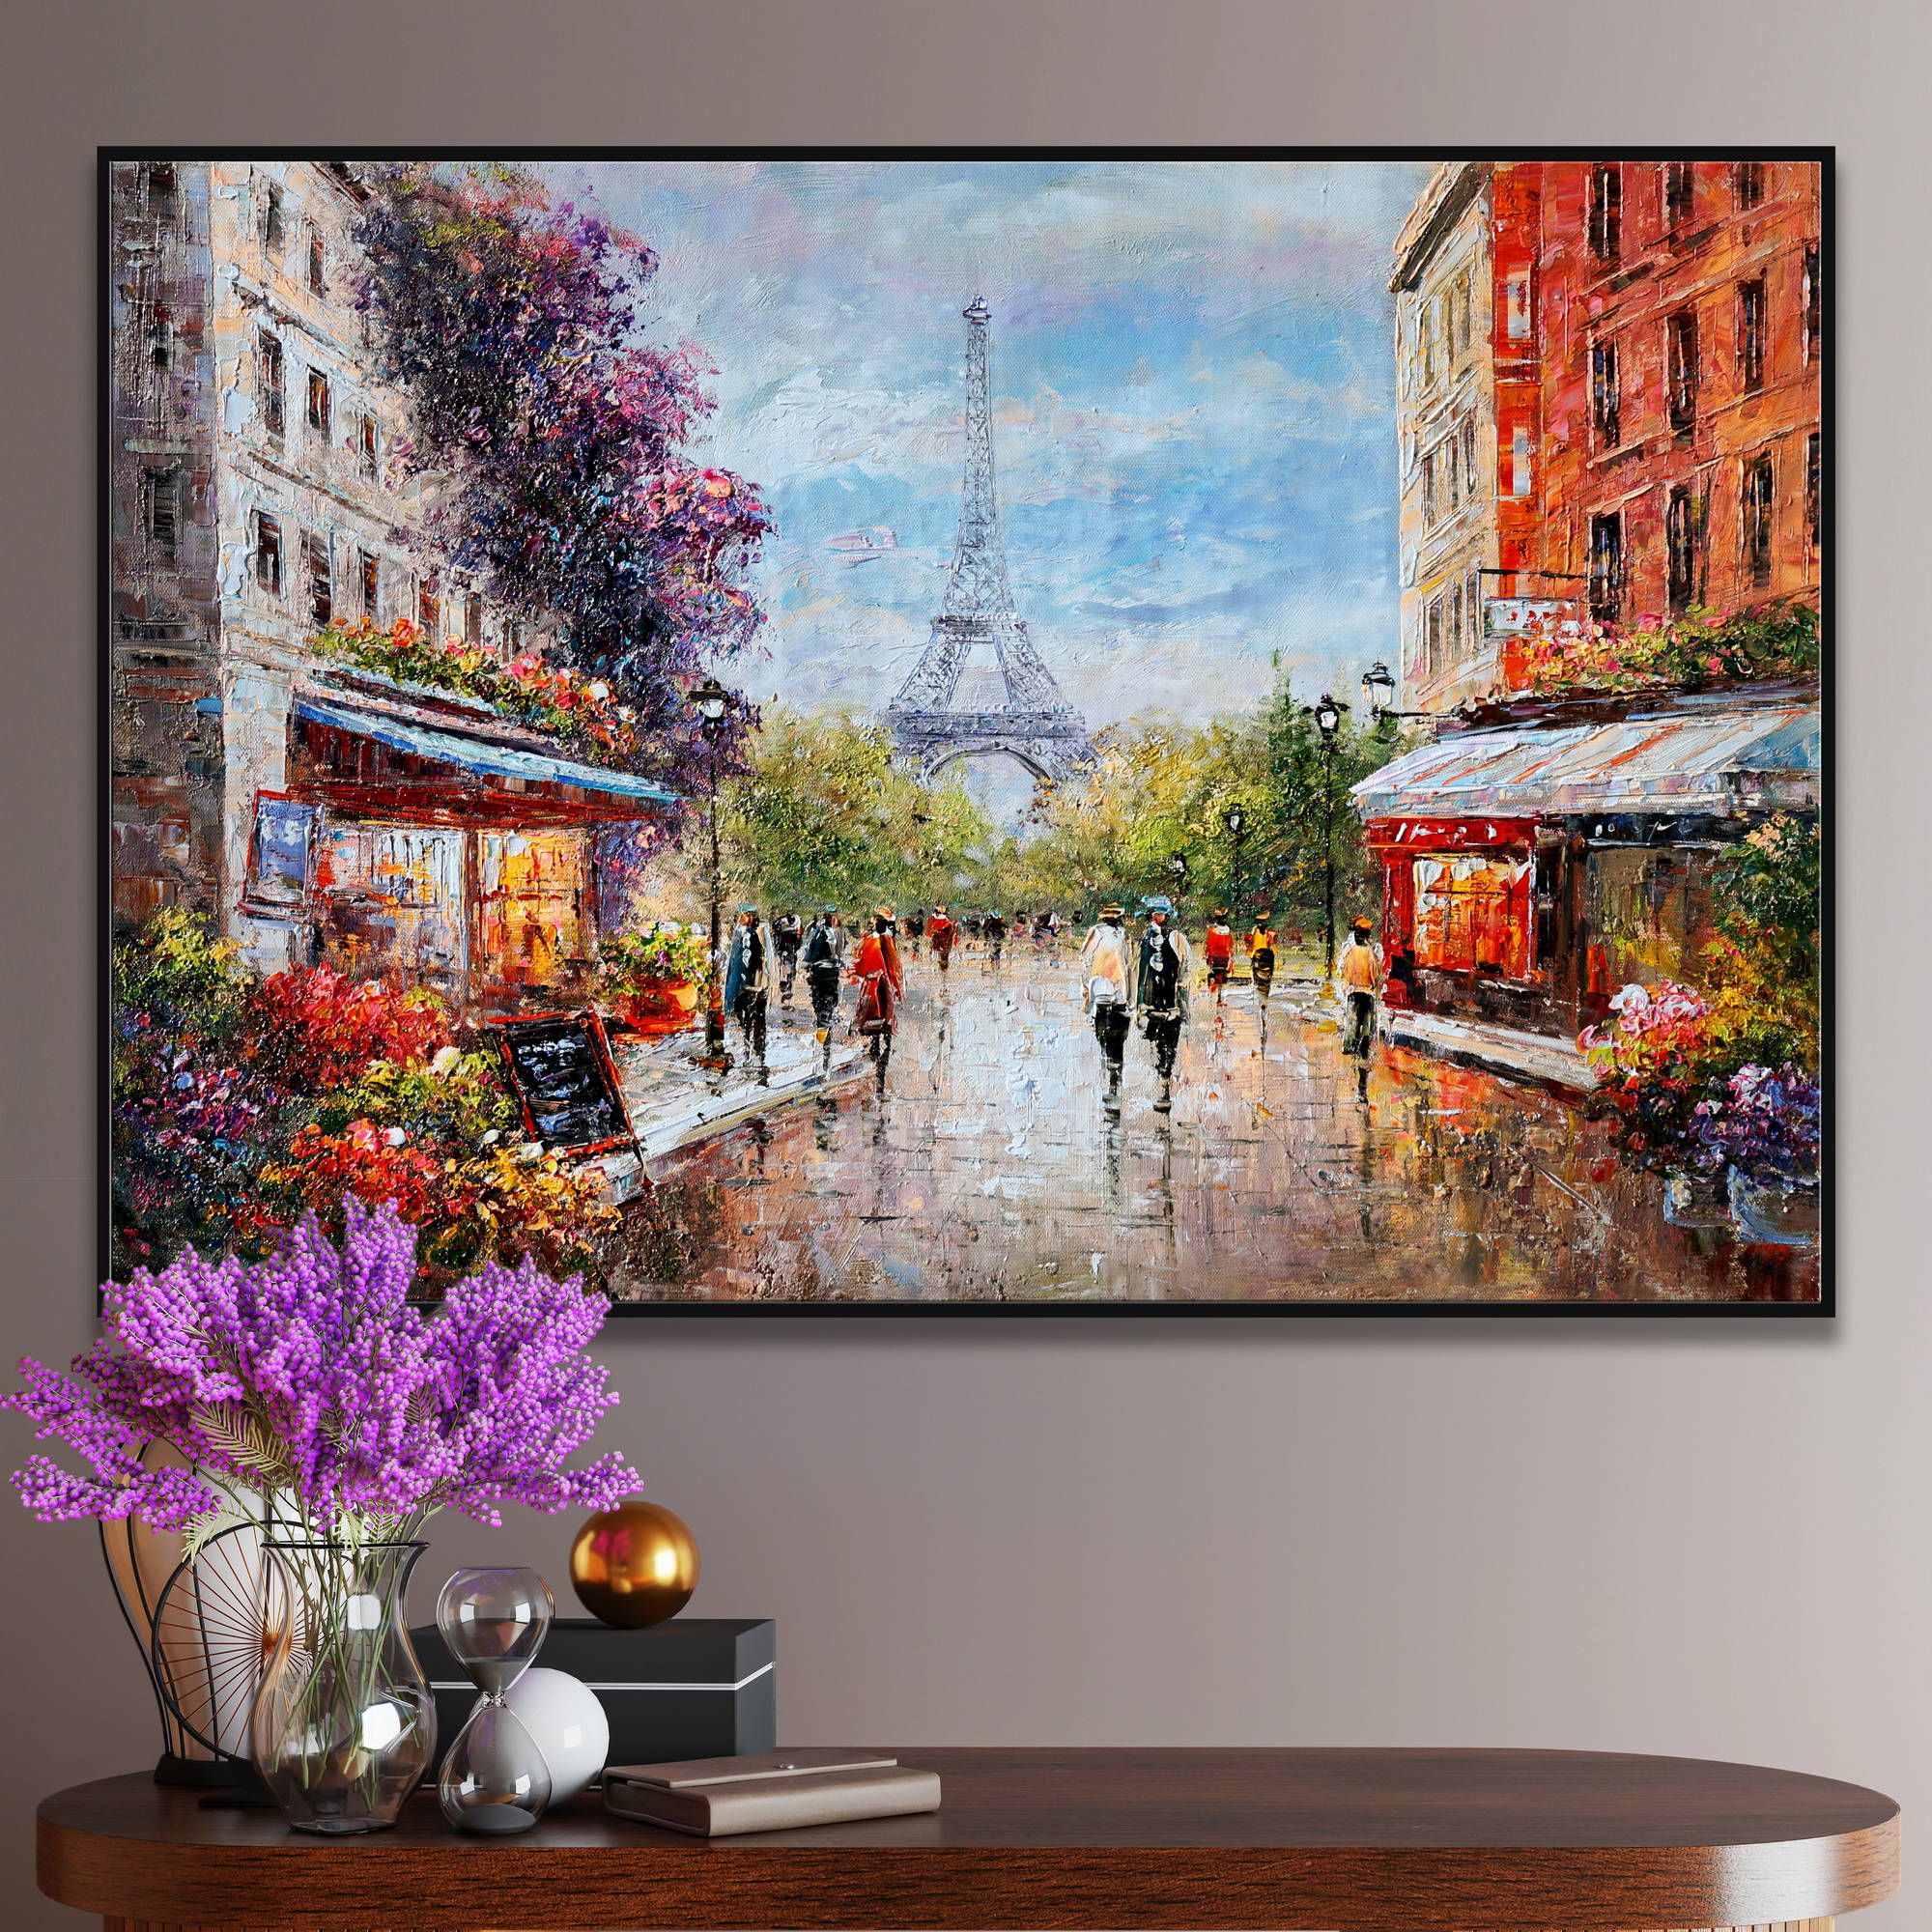 Dipinto impressionista della Torre Eiffel e viandanti a Parigi.